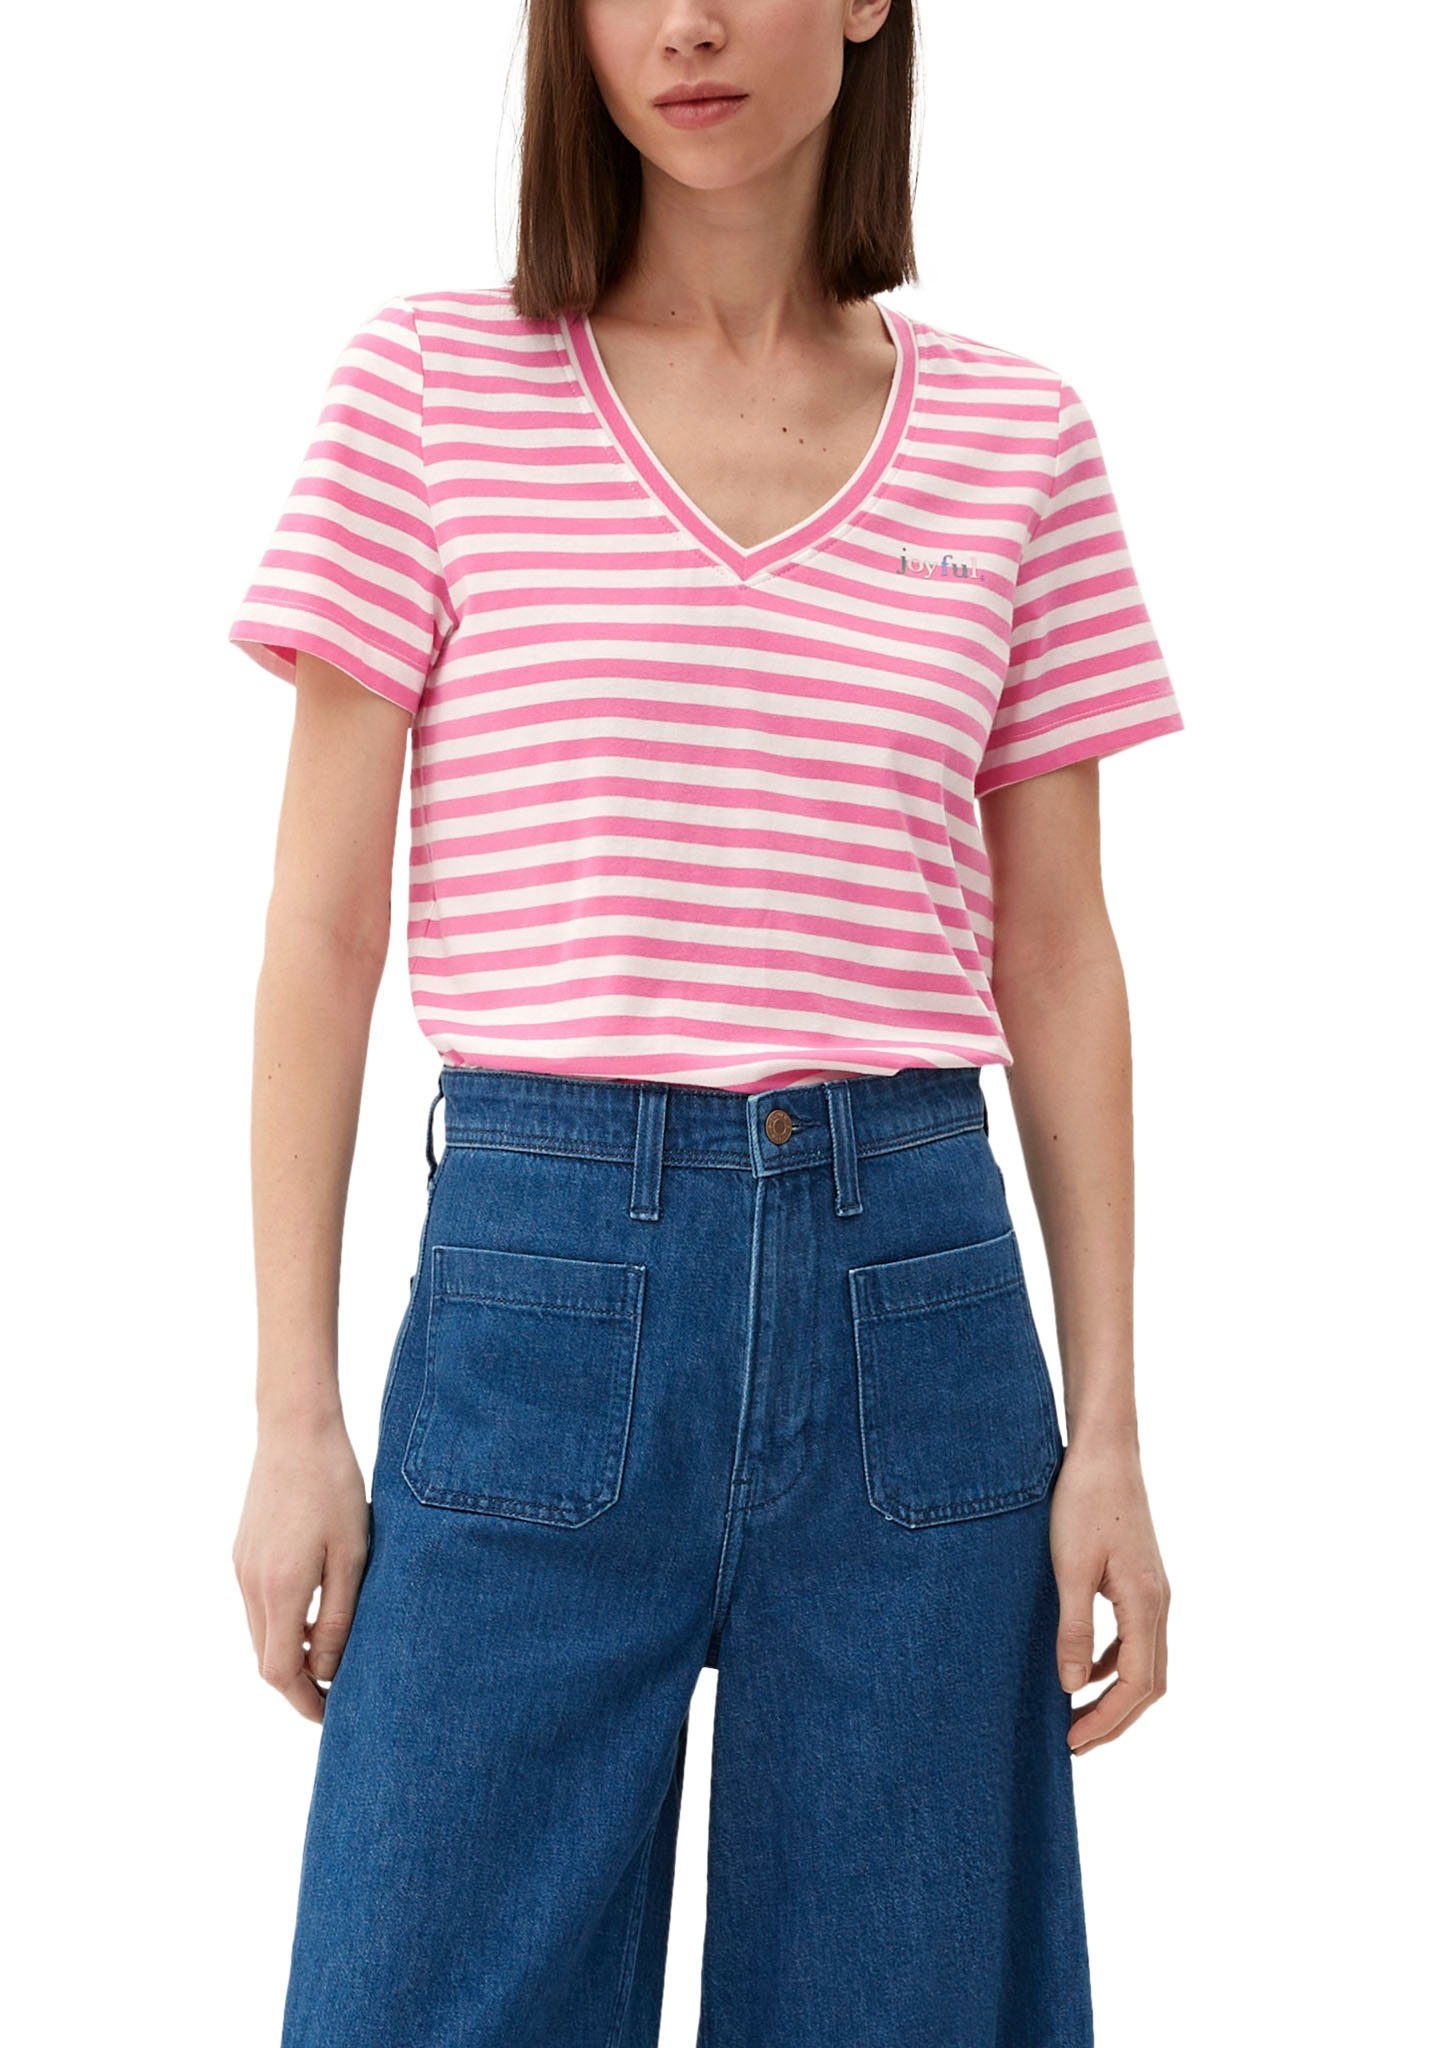 »joyful.« Frontprint lilac/pink V-Shirt s.Oliver mit